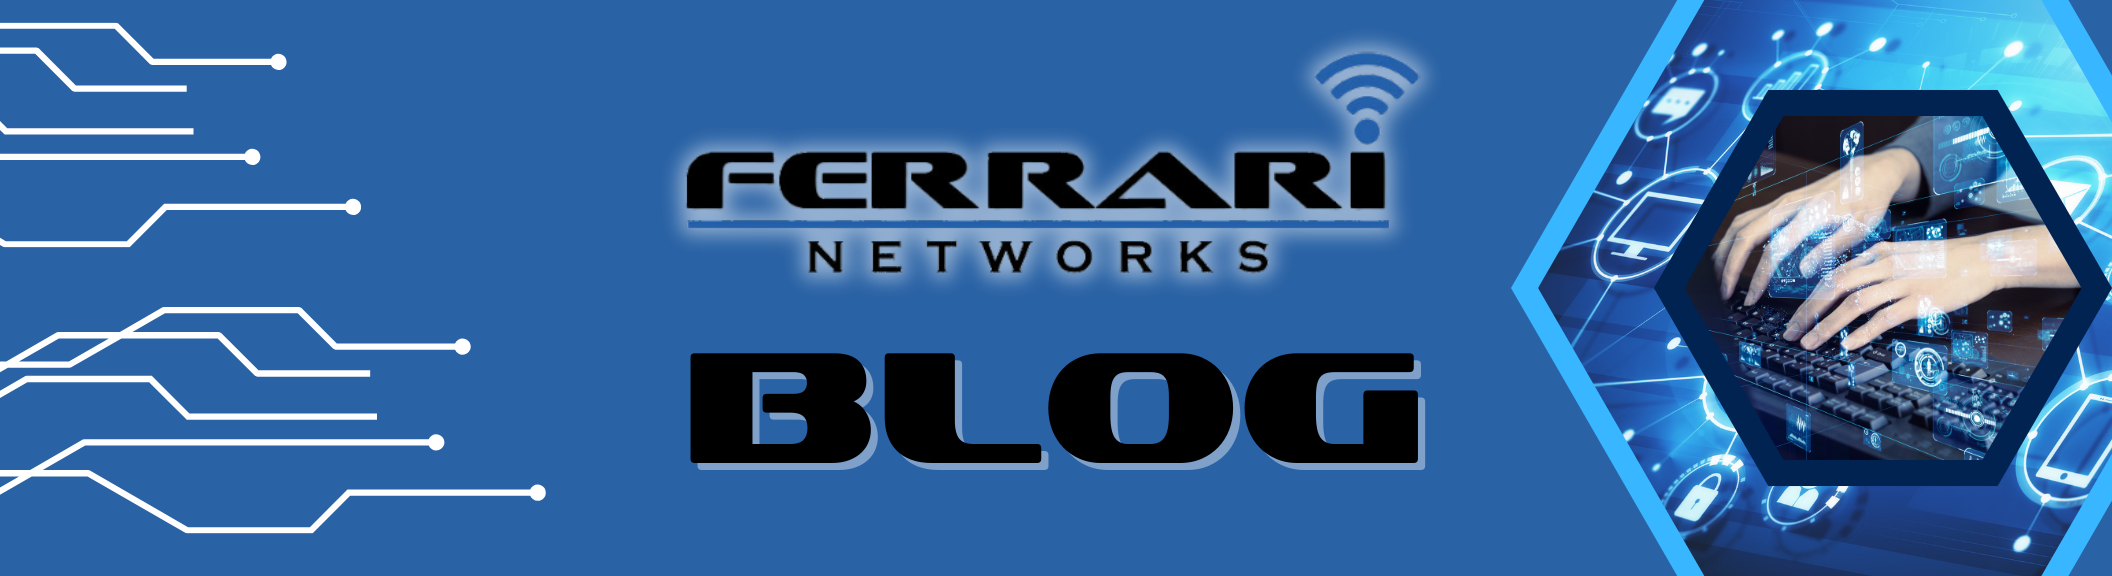 Ferrari Networks - Blog